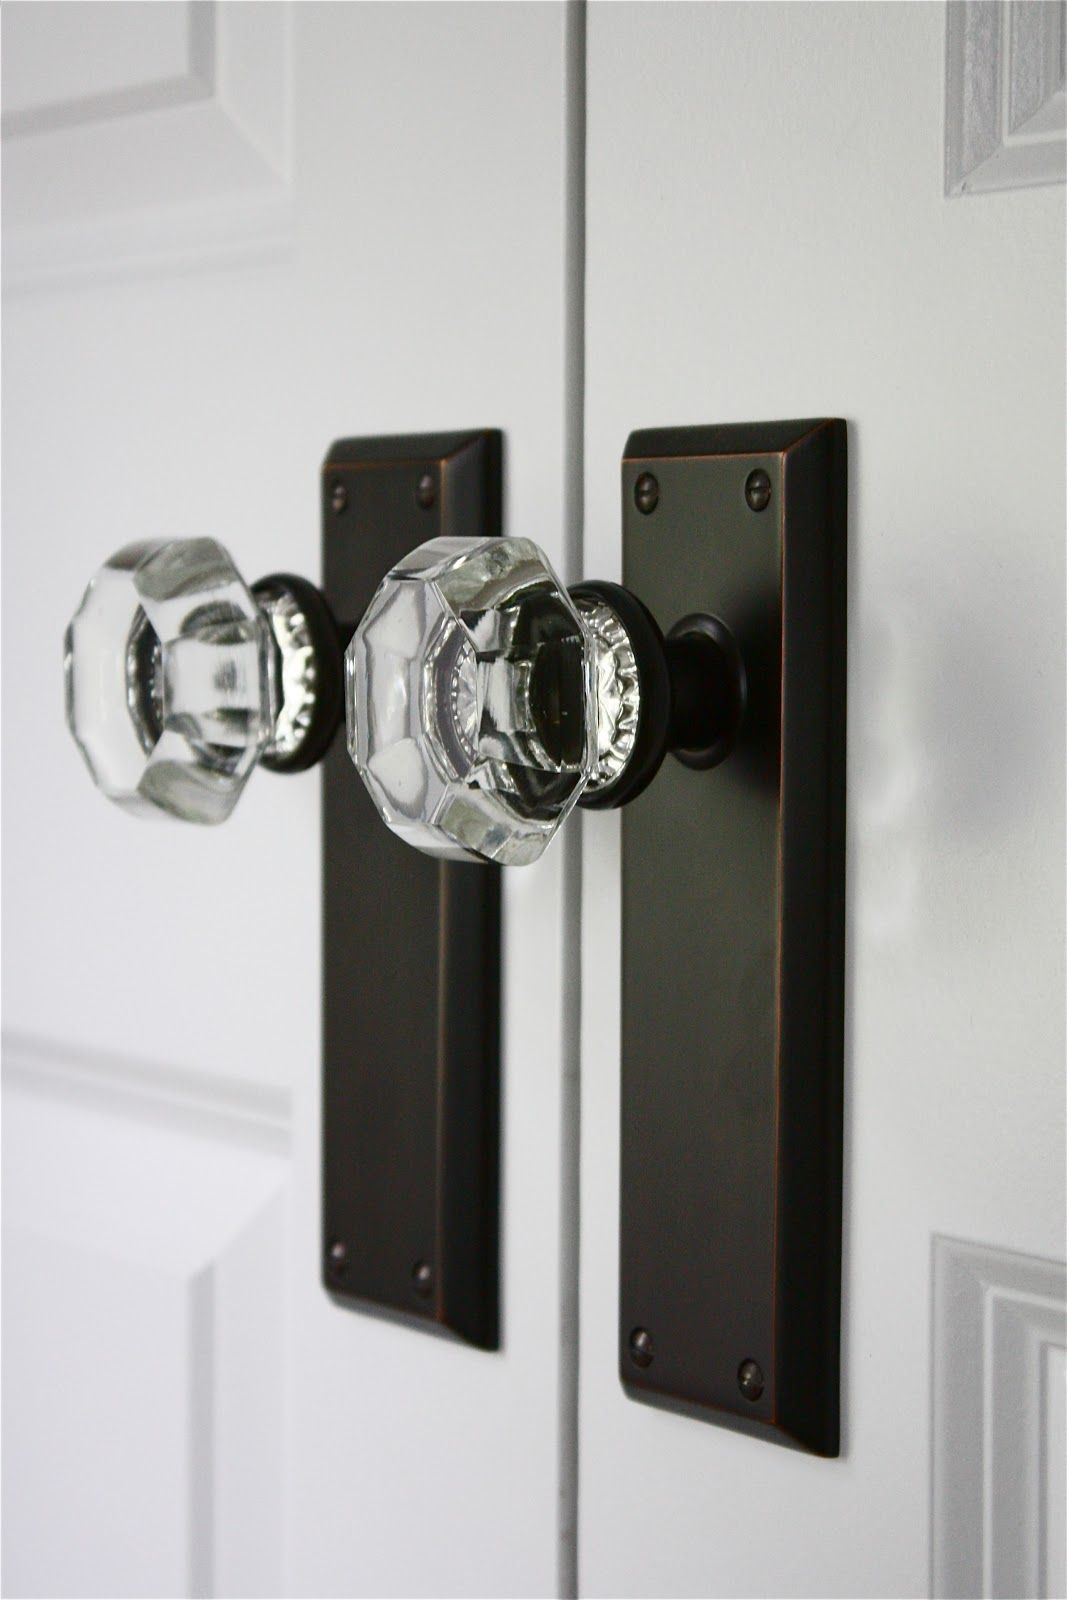 Crystal door knobs on elegant wooden door